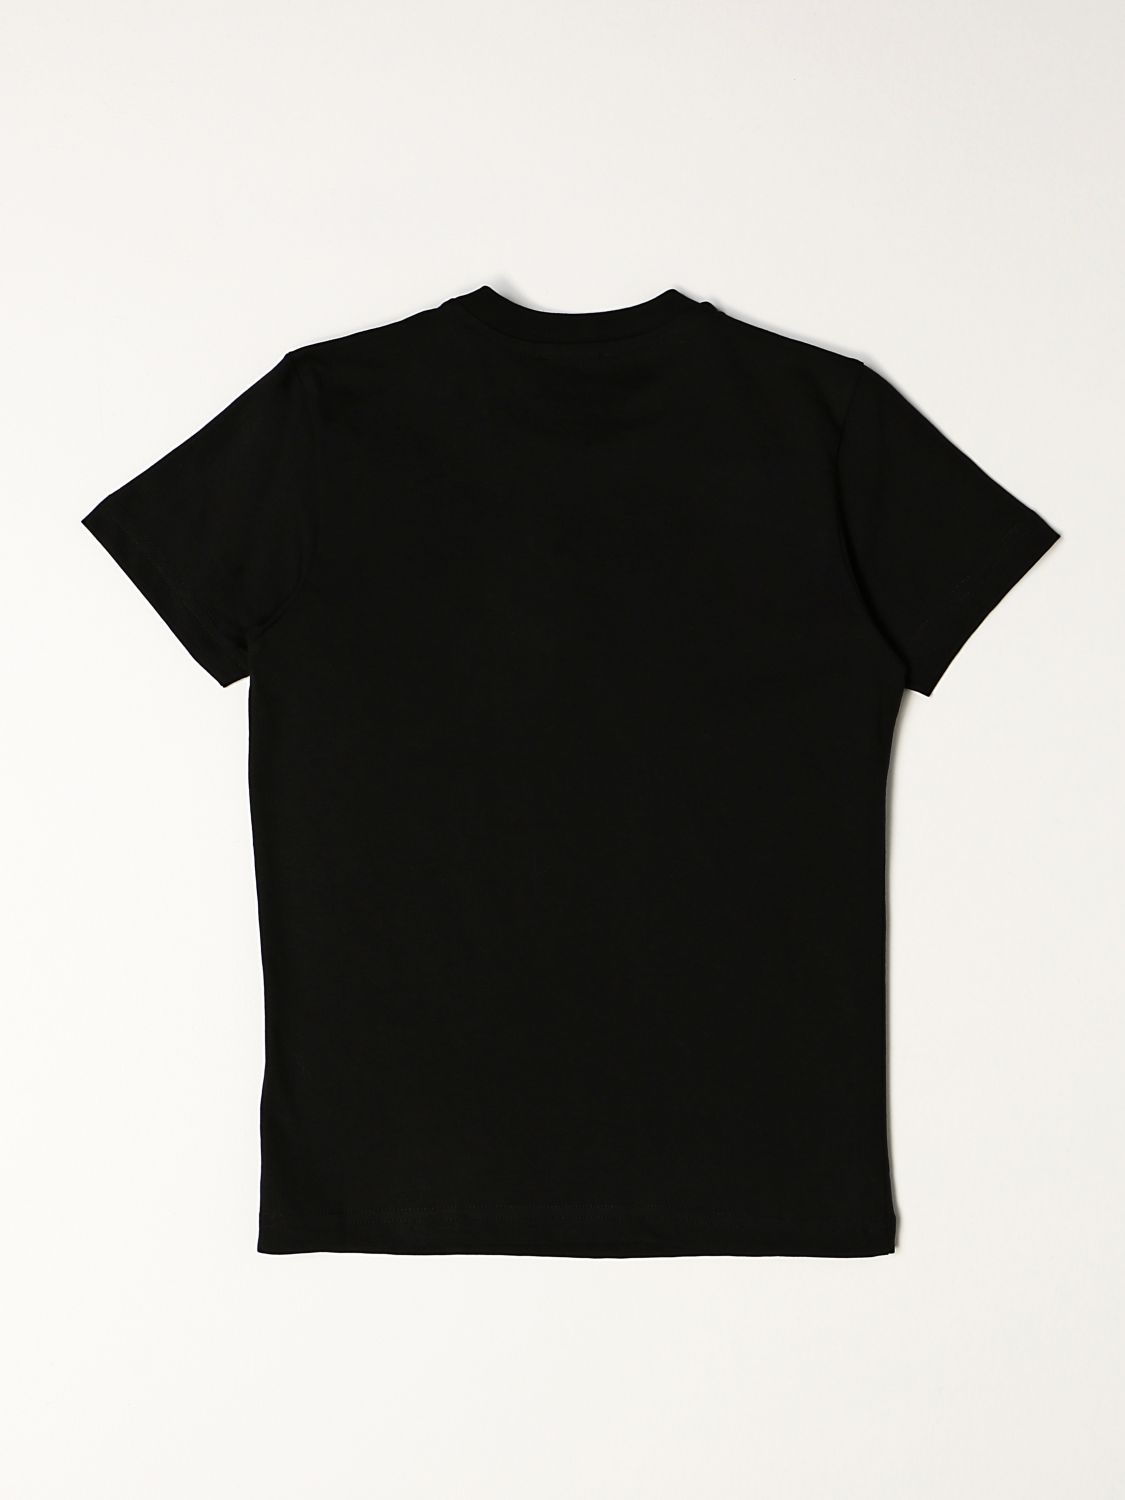 T-Shirt Diesel: T-shirt kinder Diesel schwarz 2